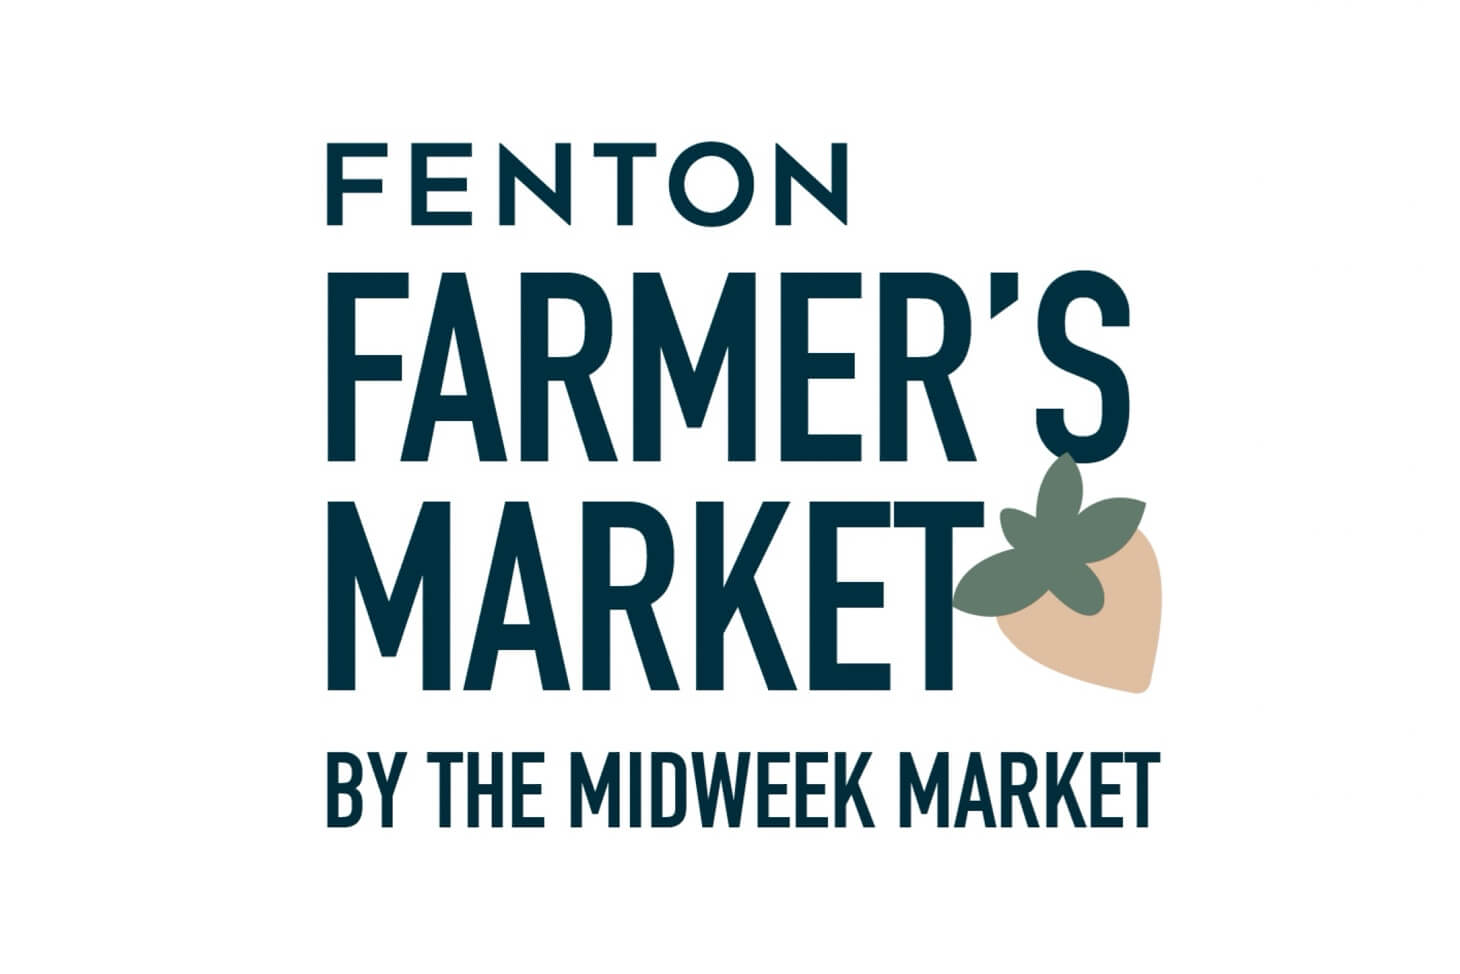 Fenton Farmers Market by The Midweek Market